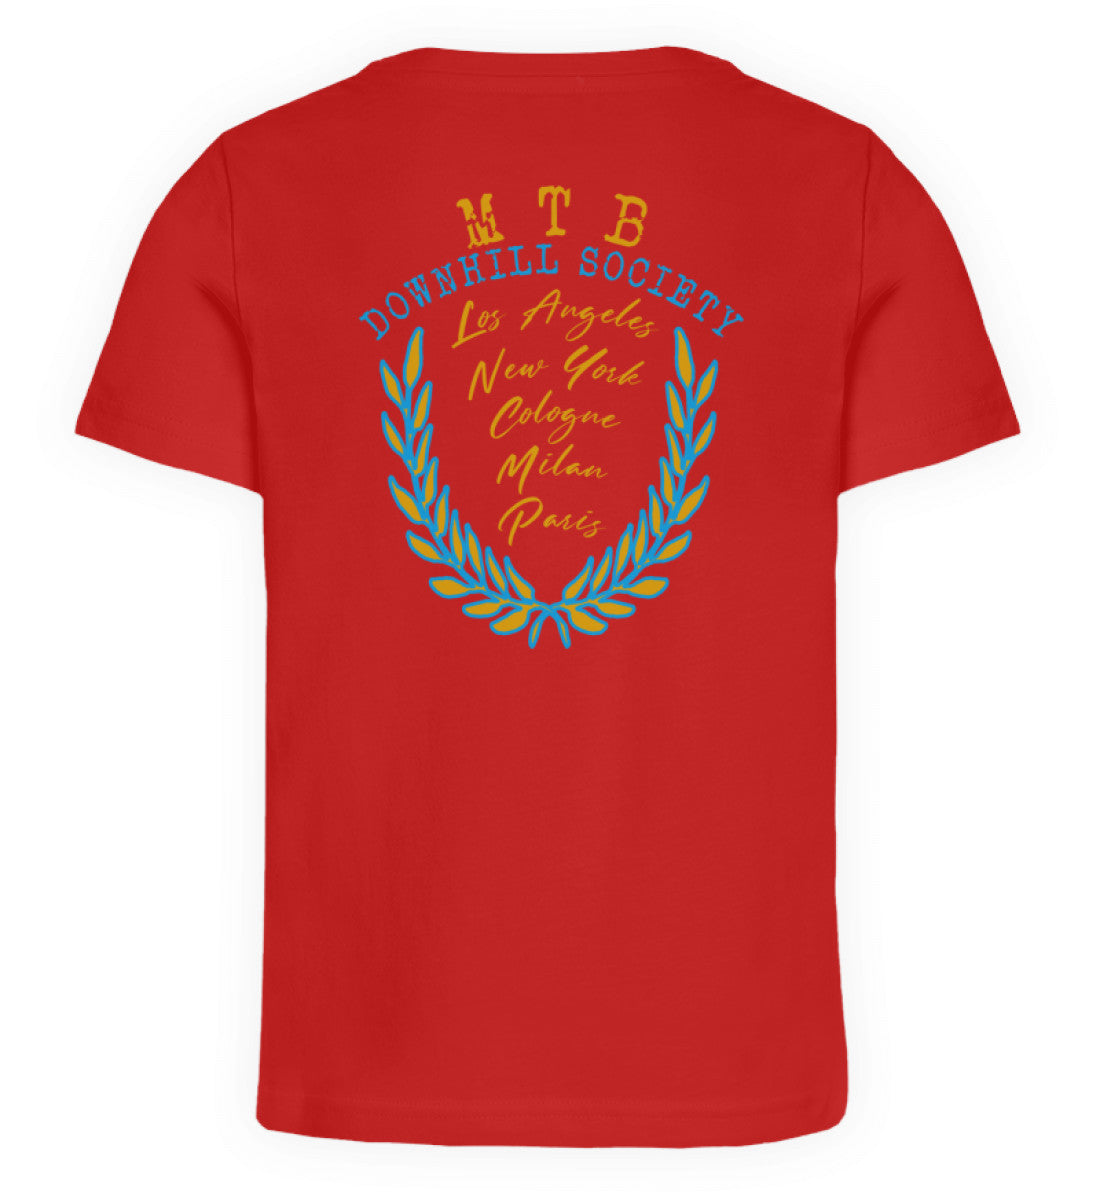 Rotes Kinder T-Shirt für Mädchen und Jungen bedruckt mit dem Design der Roger Rockawoo Kollektion Mountainbike get dirty